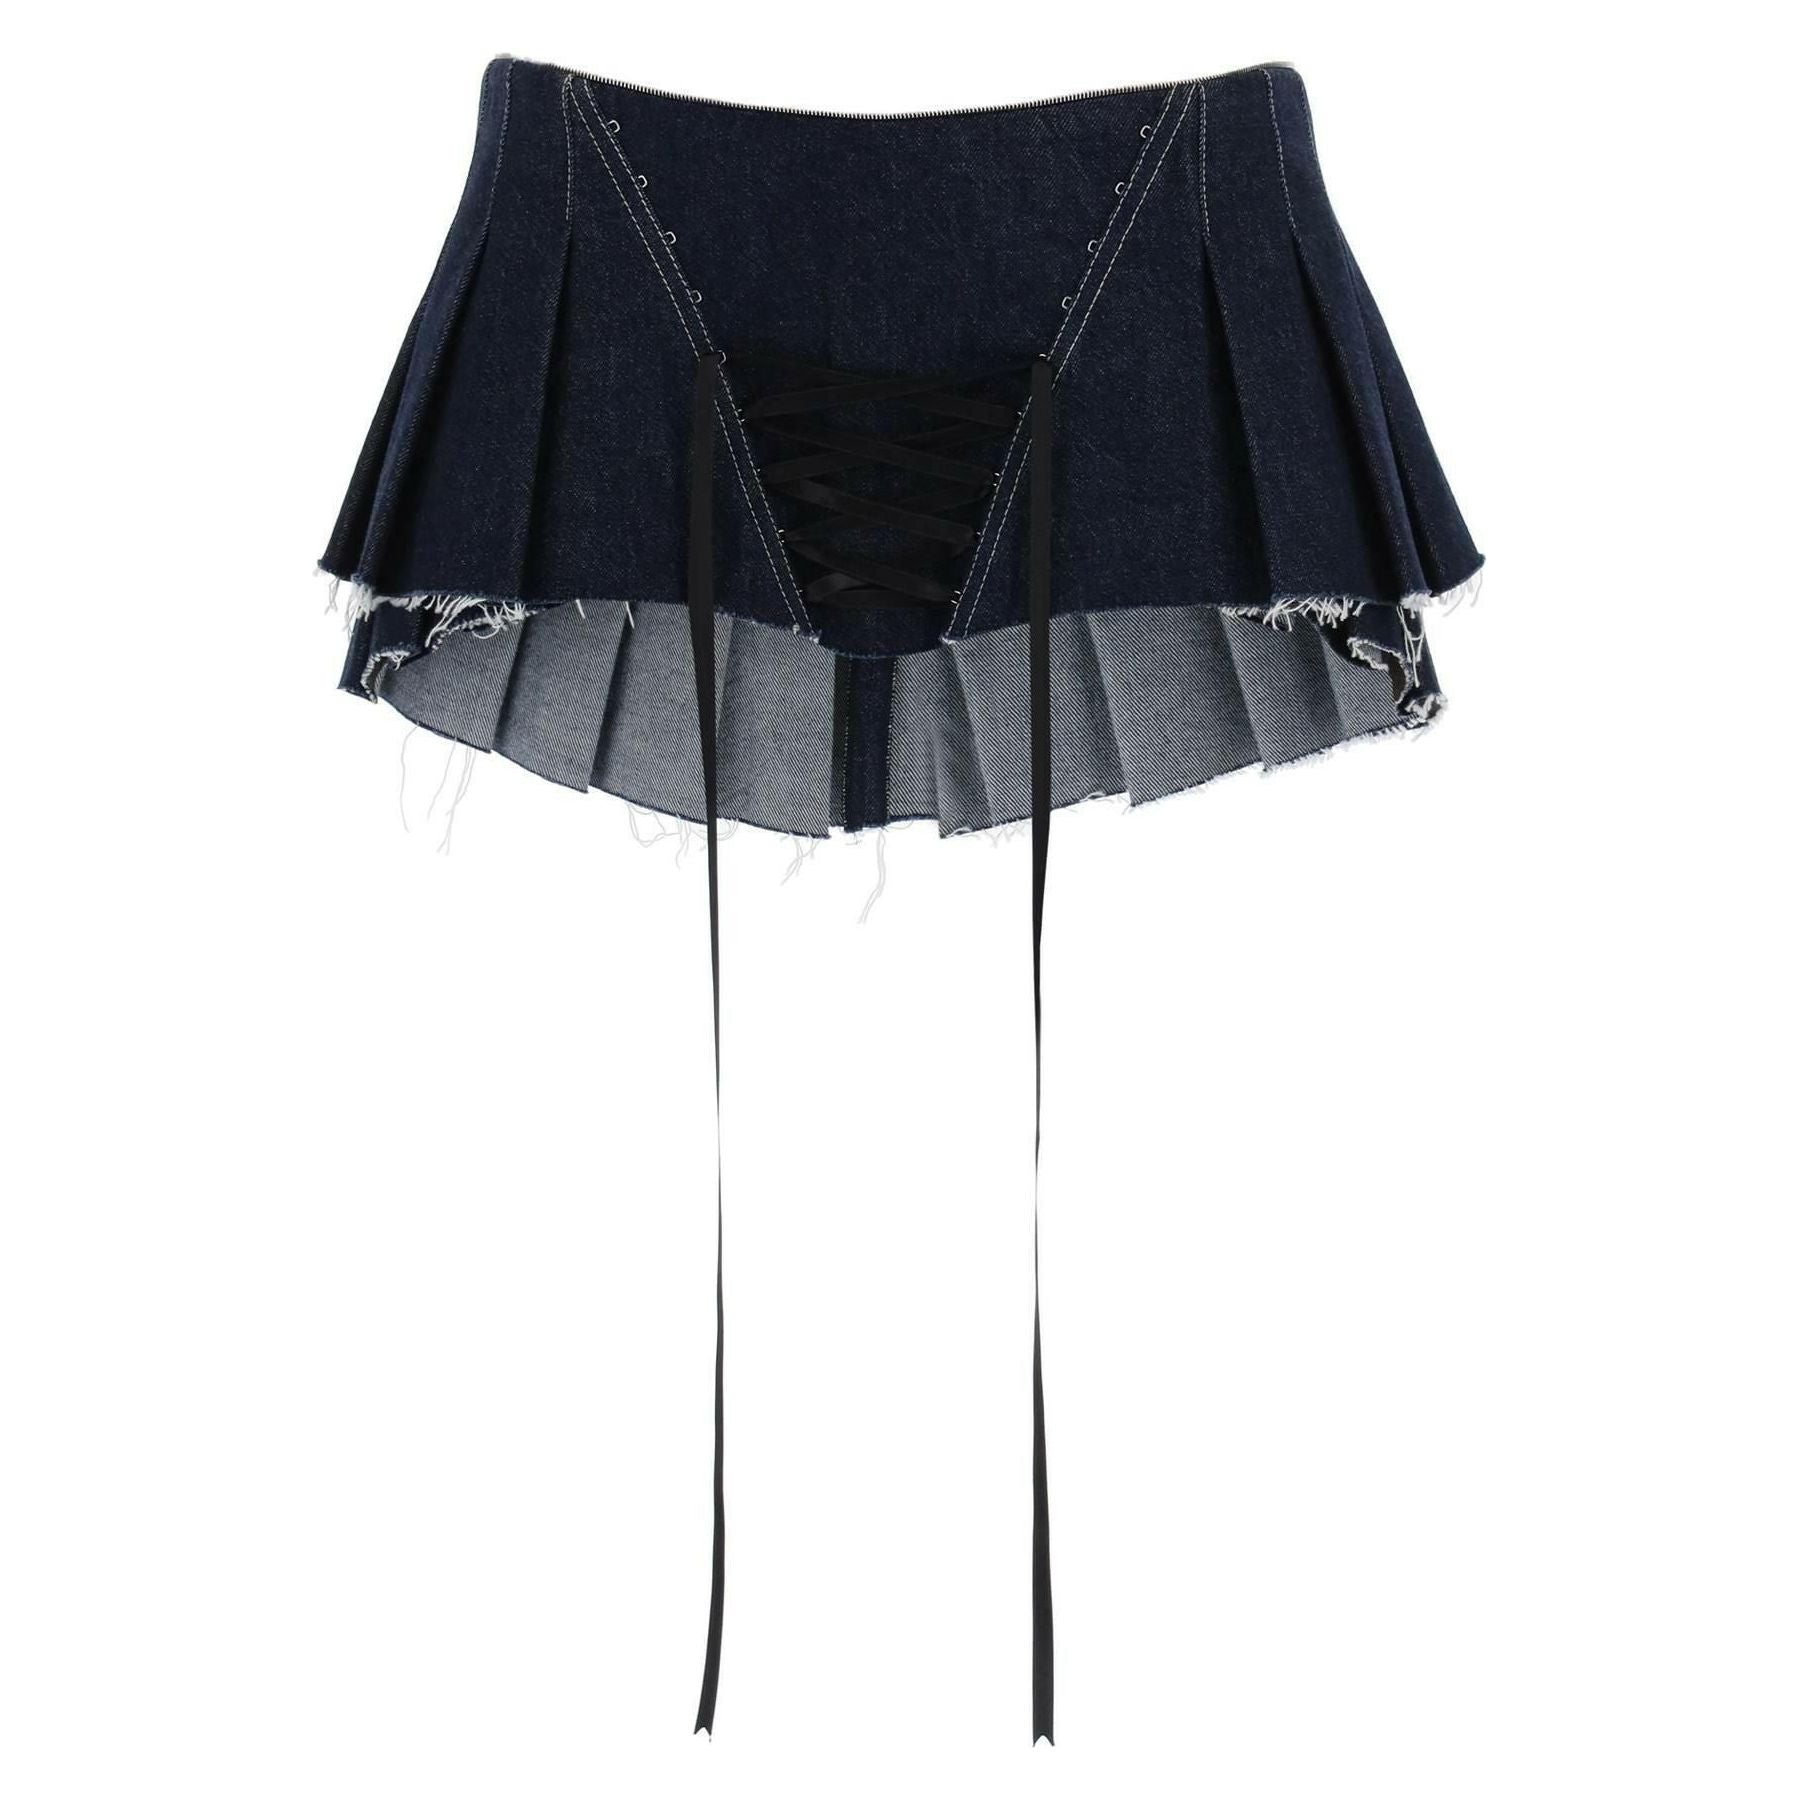 Micro Pleated Skirt With Corset DILARA FINDIKOGLU JOHN JULIA.